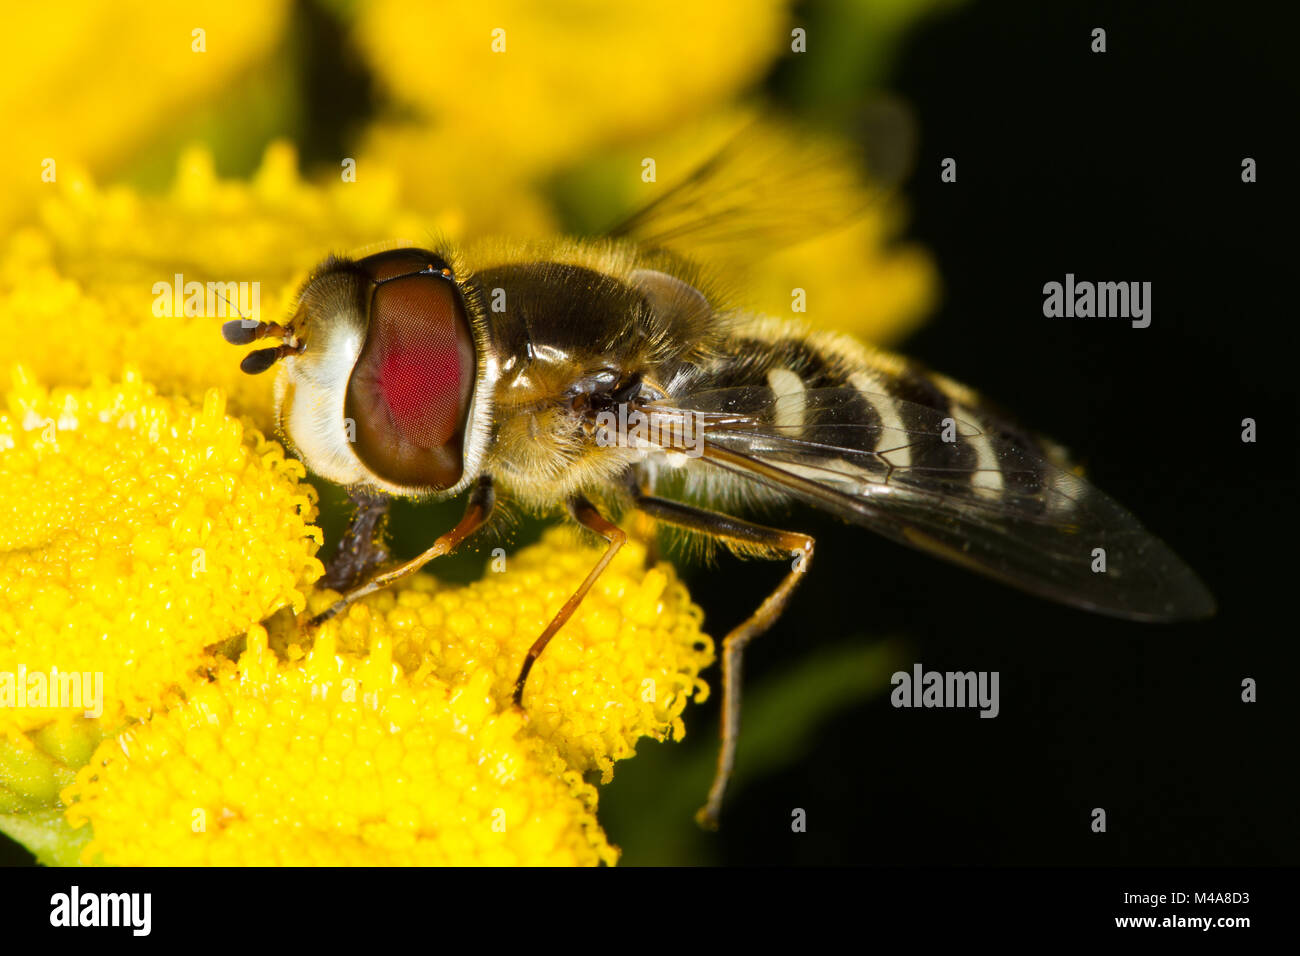 Scaeva pyrastri (a wasp-mimic hoverfly) feeding on Tansy (Tanacetum vulgare) flowers Stock Photo